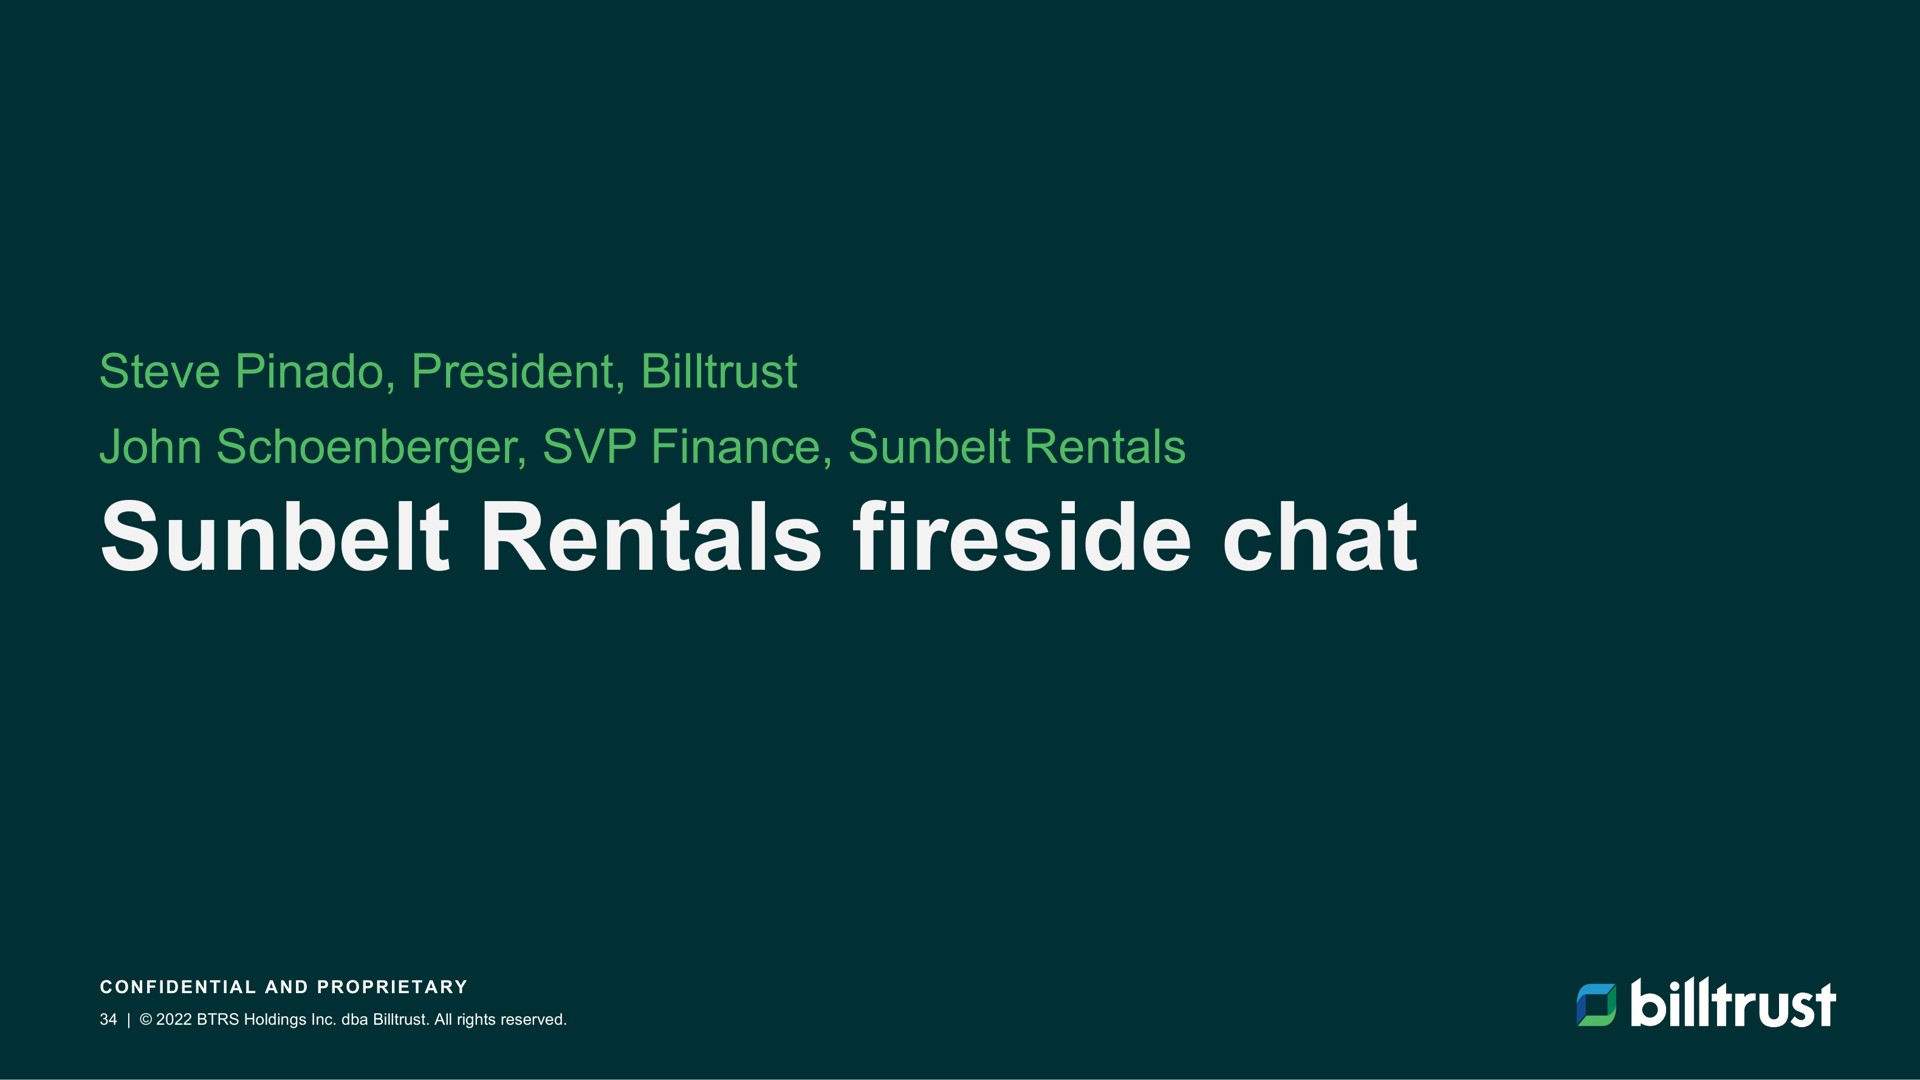 rentals fireside chat | Billtrust